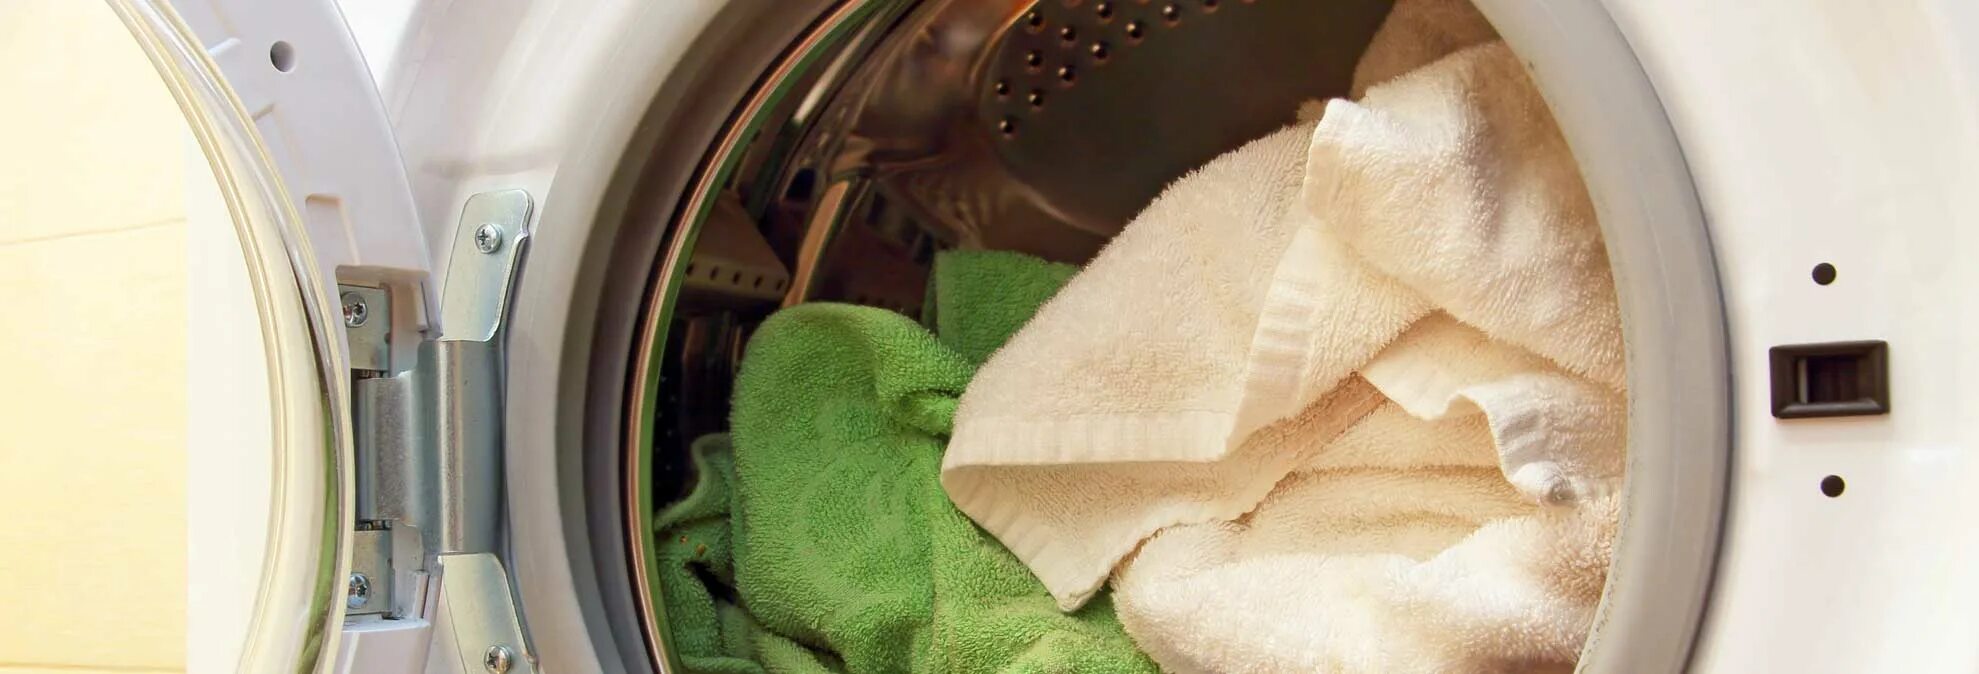 Как стирать полотенца в машинке. Стирка в микроволновке кухонных полотенец. Как стирать махровые полотенца в стиральной машине. Как стирать кухонные полотенца. Как стирать полотенца в стиральной машине.